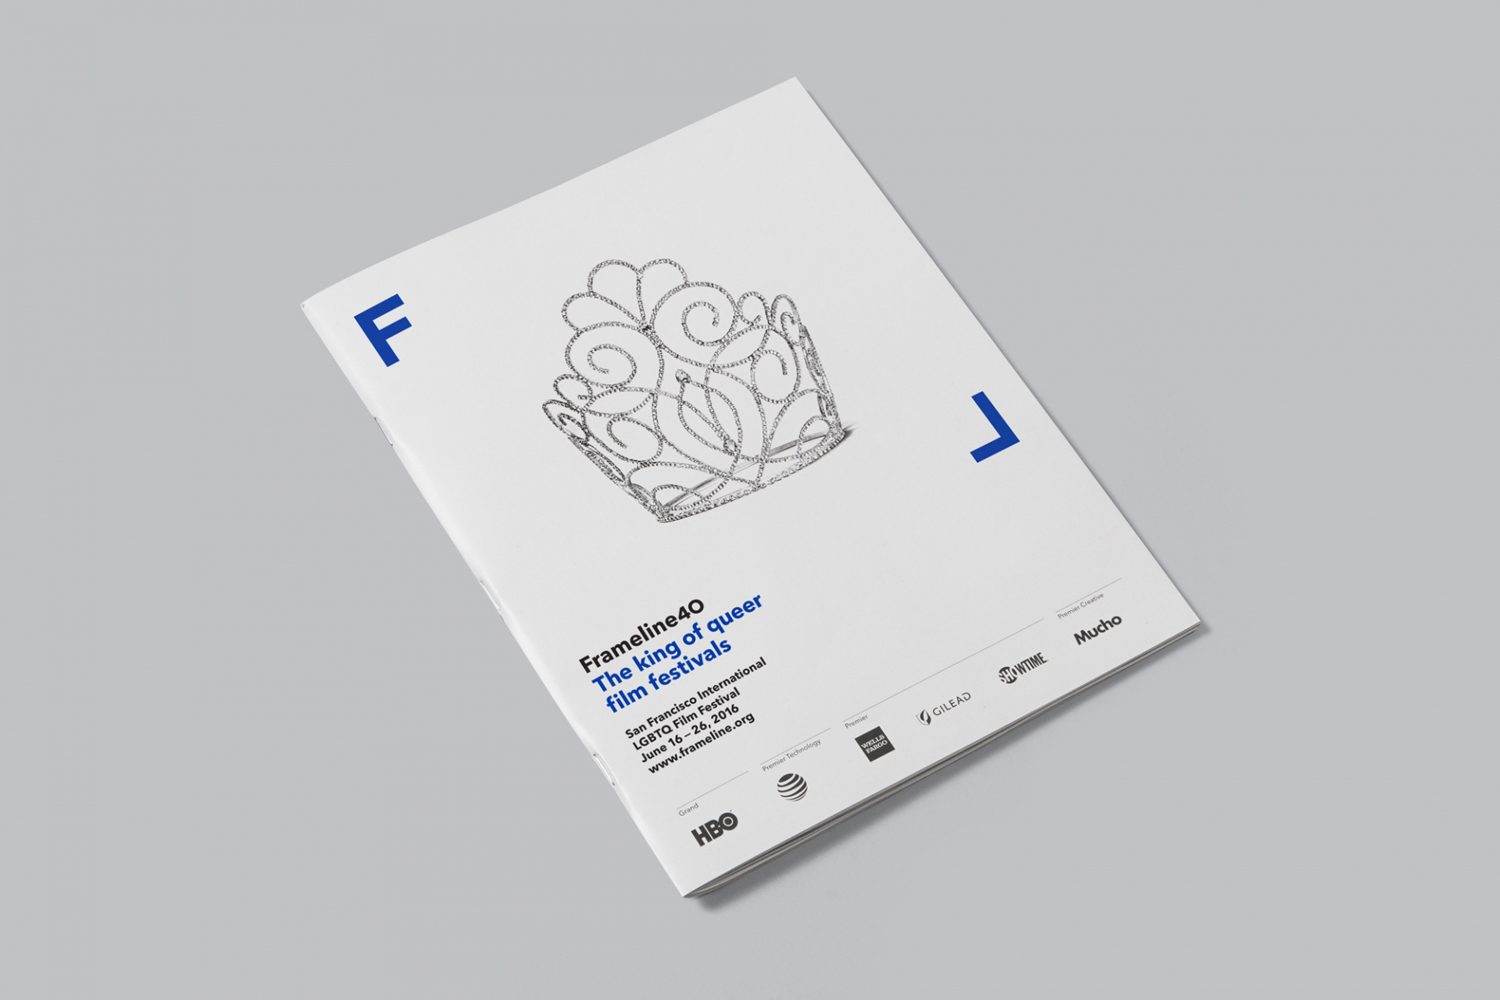 Creative Programme Design Ideas – Frameline by Mucho